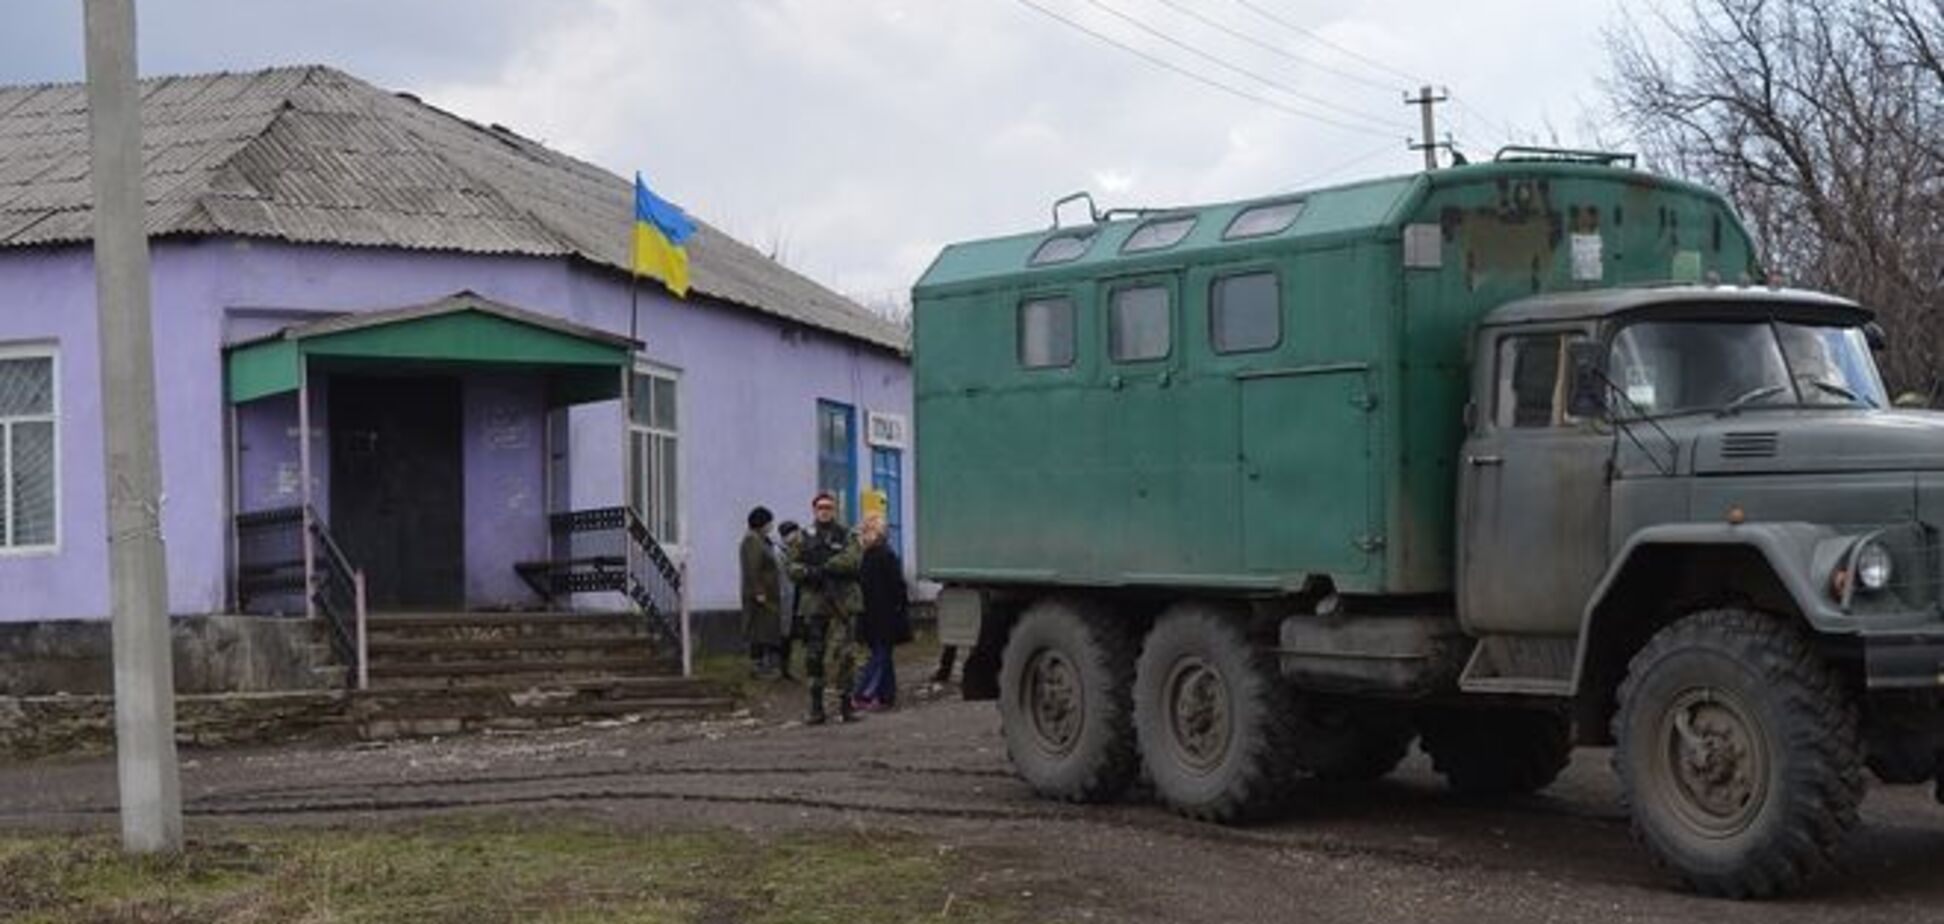 Над ще одним селом в Луганській області підняли прапор України. Фотофакт